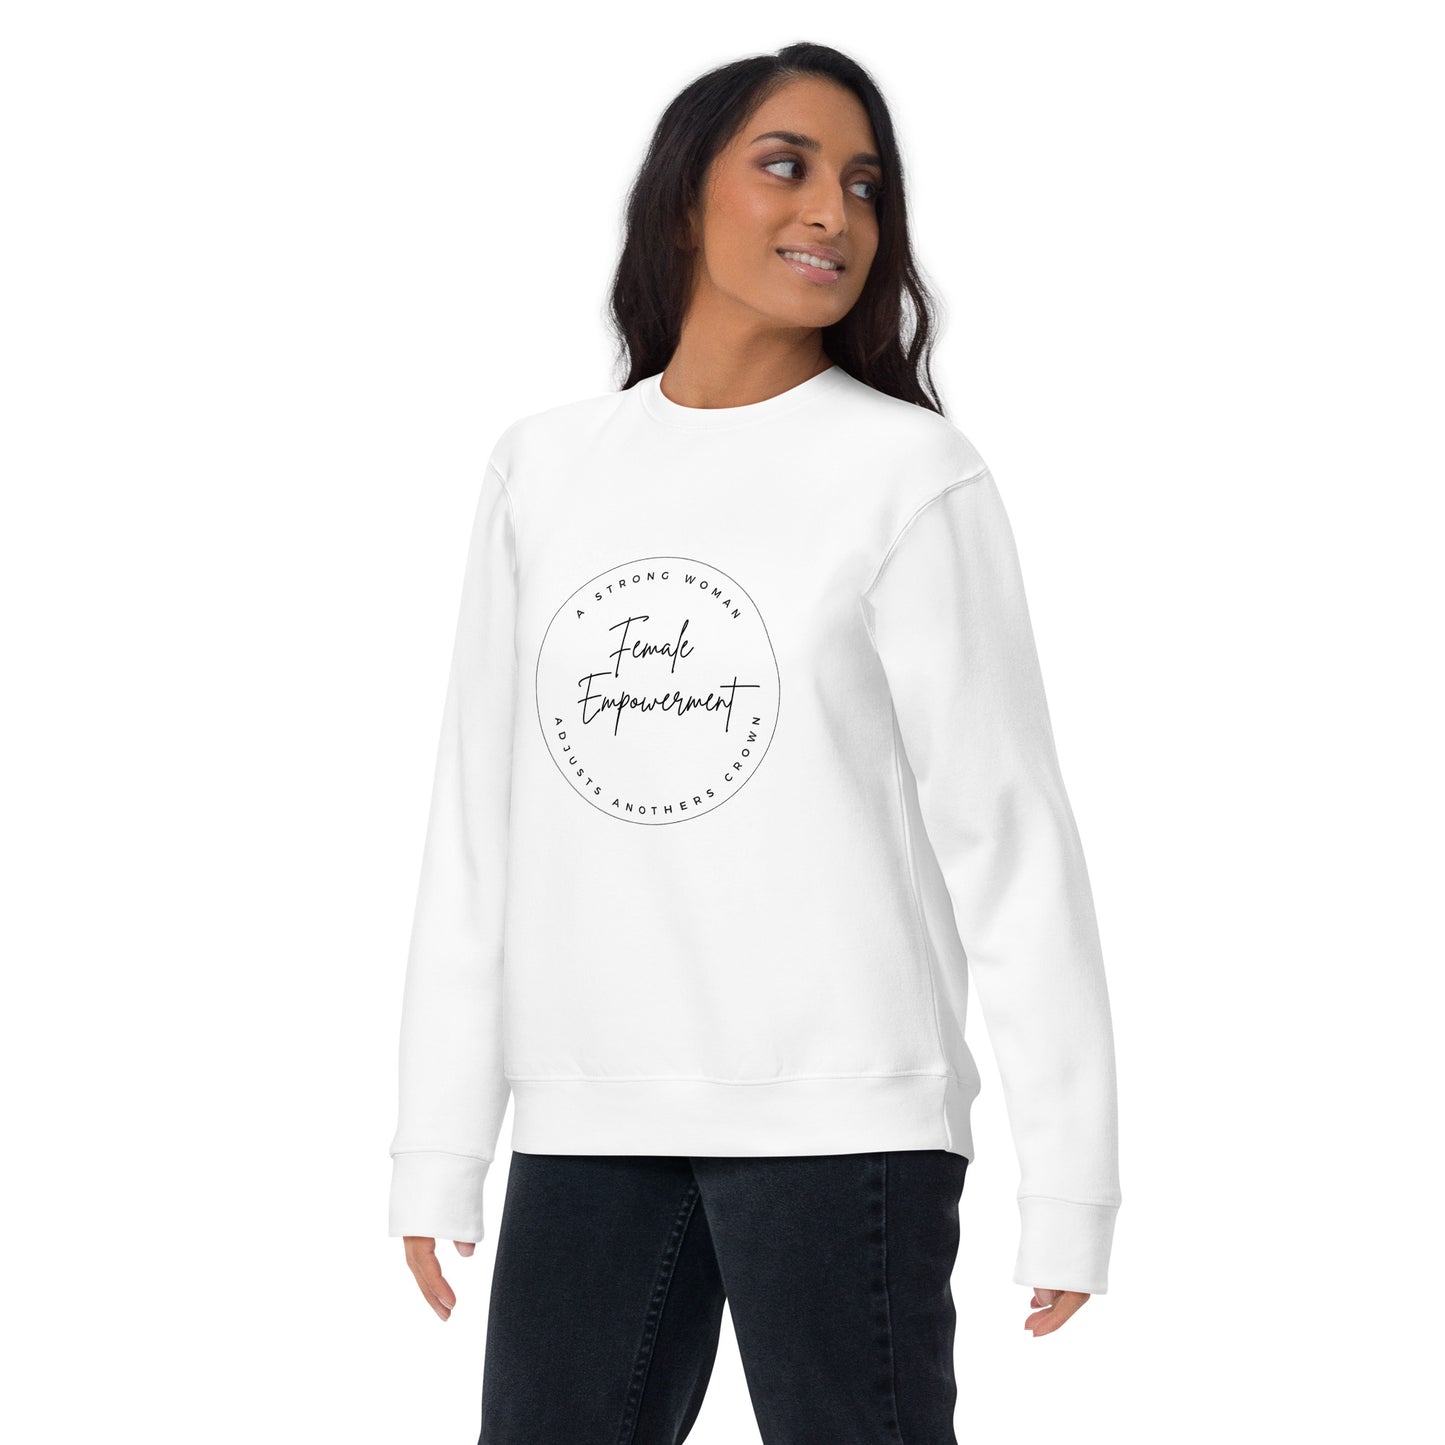 Unisex Premium Sweatshirt - Female Empowerment Sweatshirt Stylin' Spirit White S 